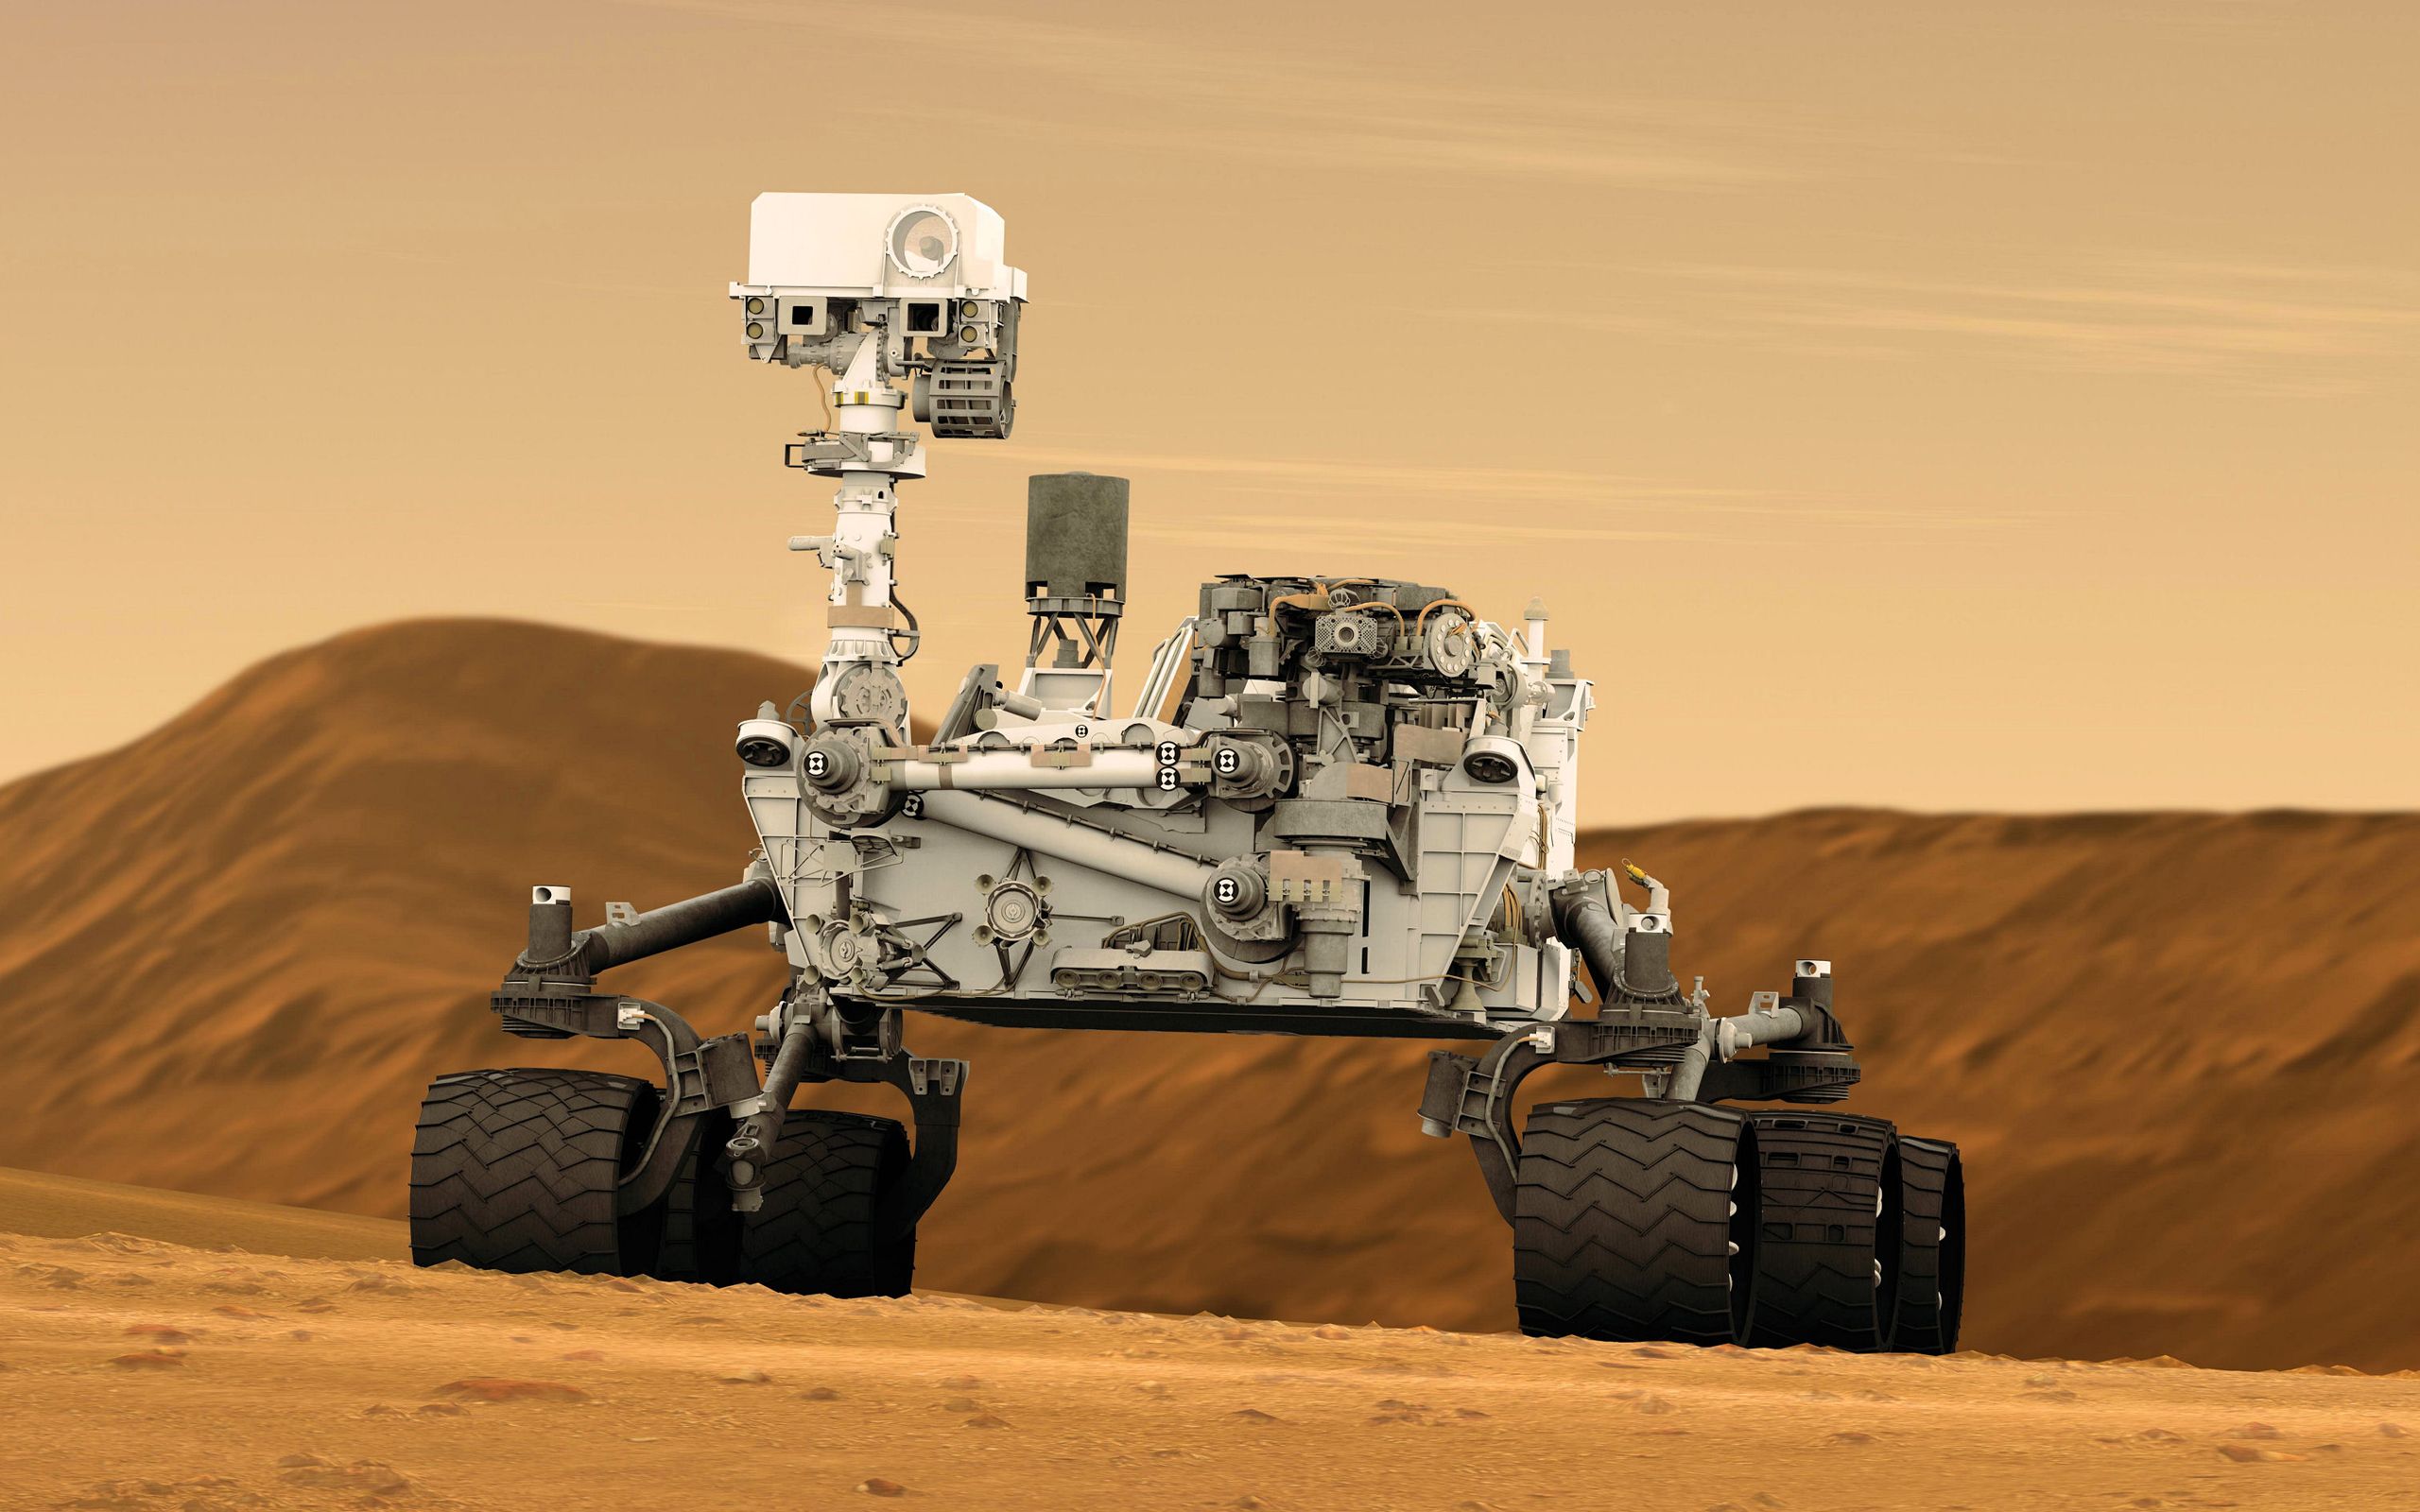 عکس جالب از دستگاه فرستاده شده به مریخ برای تحقیقات